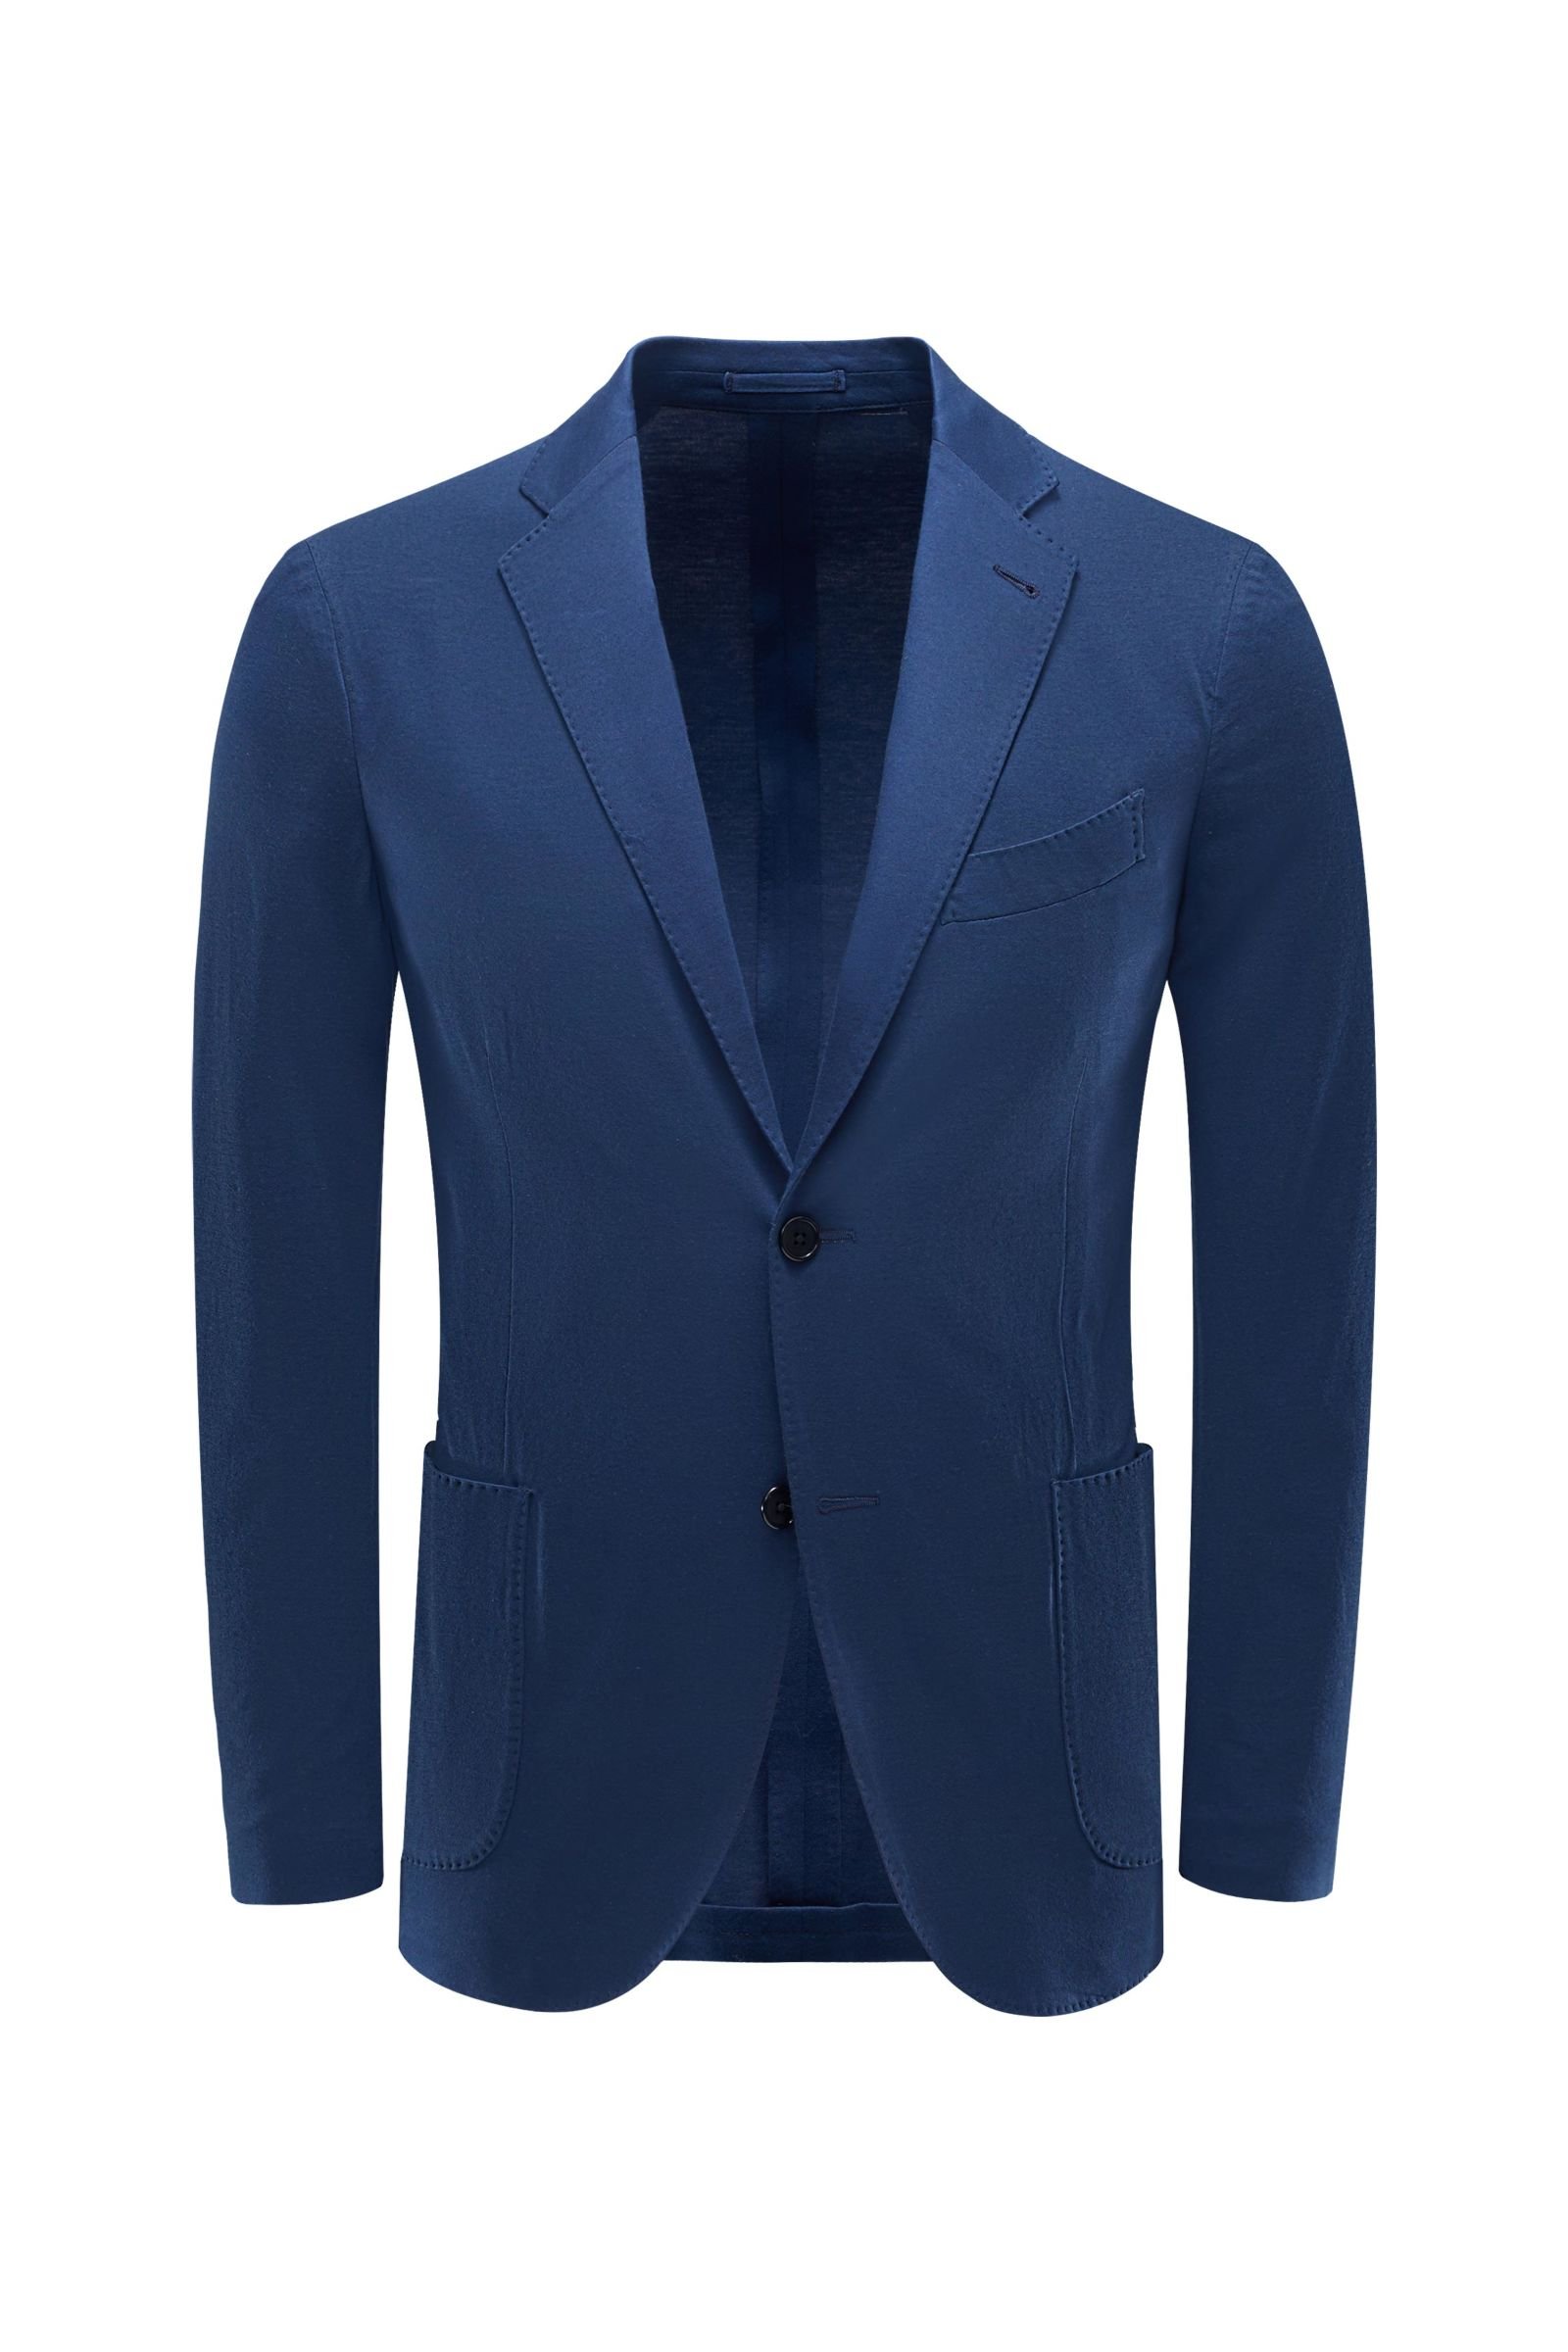 Jersey jacket dark blue